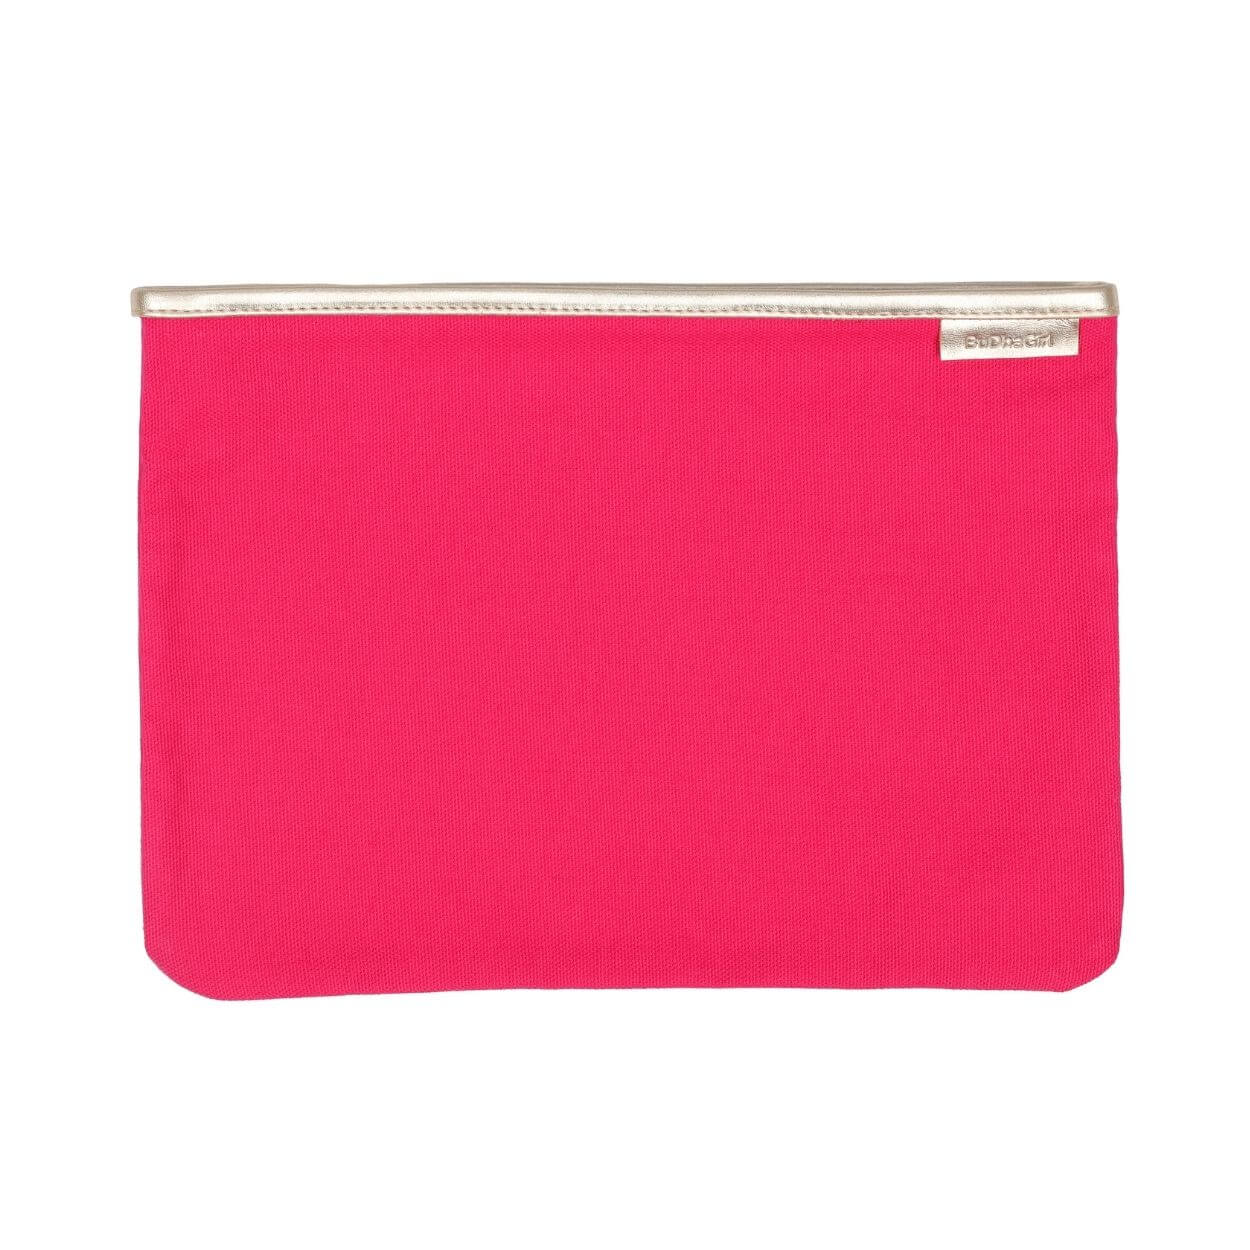 Pink Pochette | Clutch Bag | Handbags by BuDhaGirl